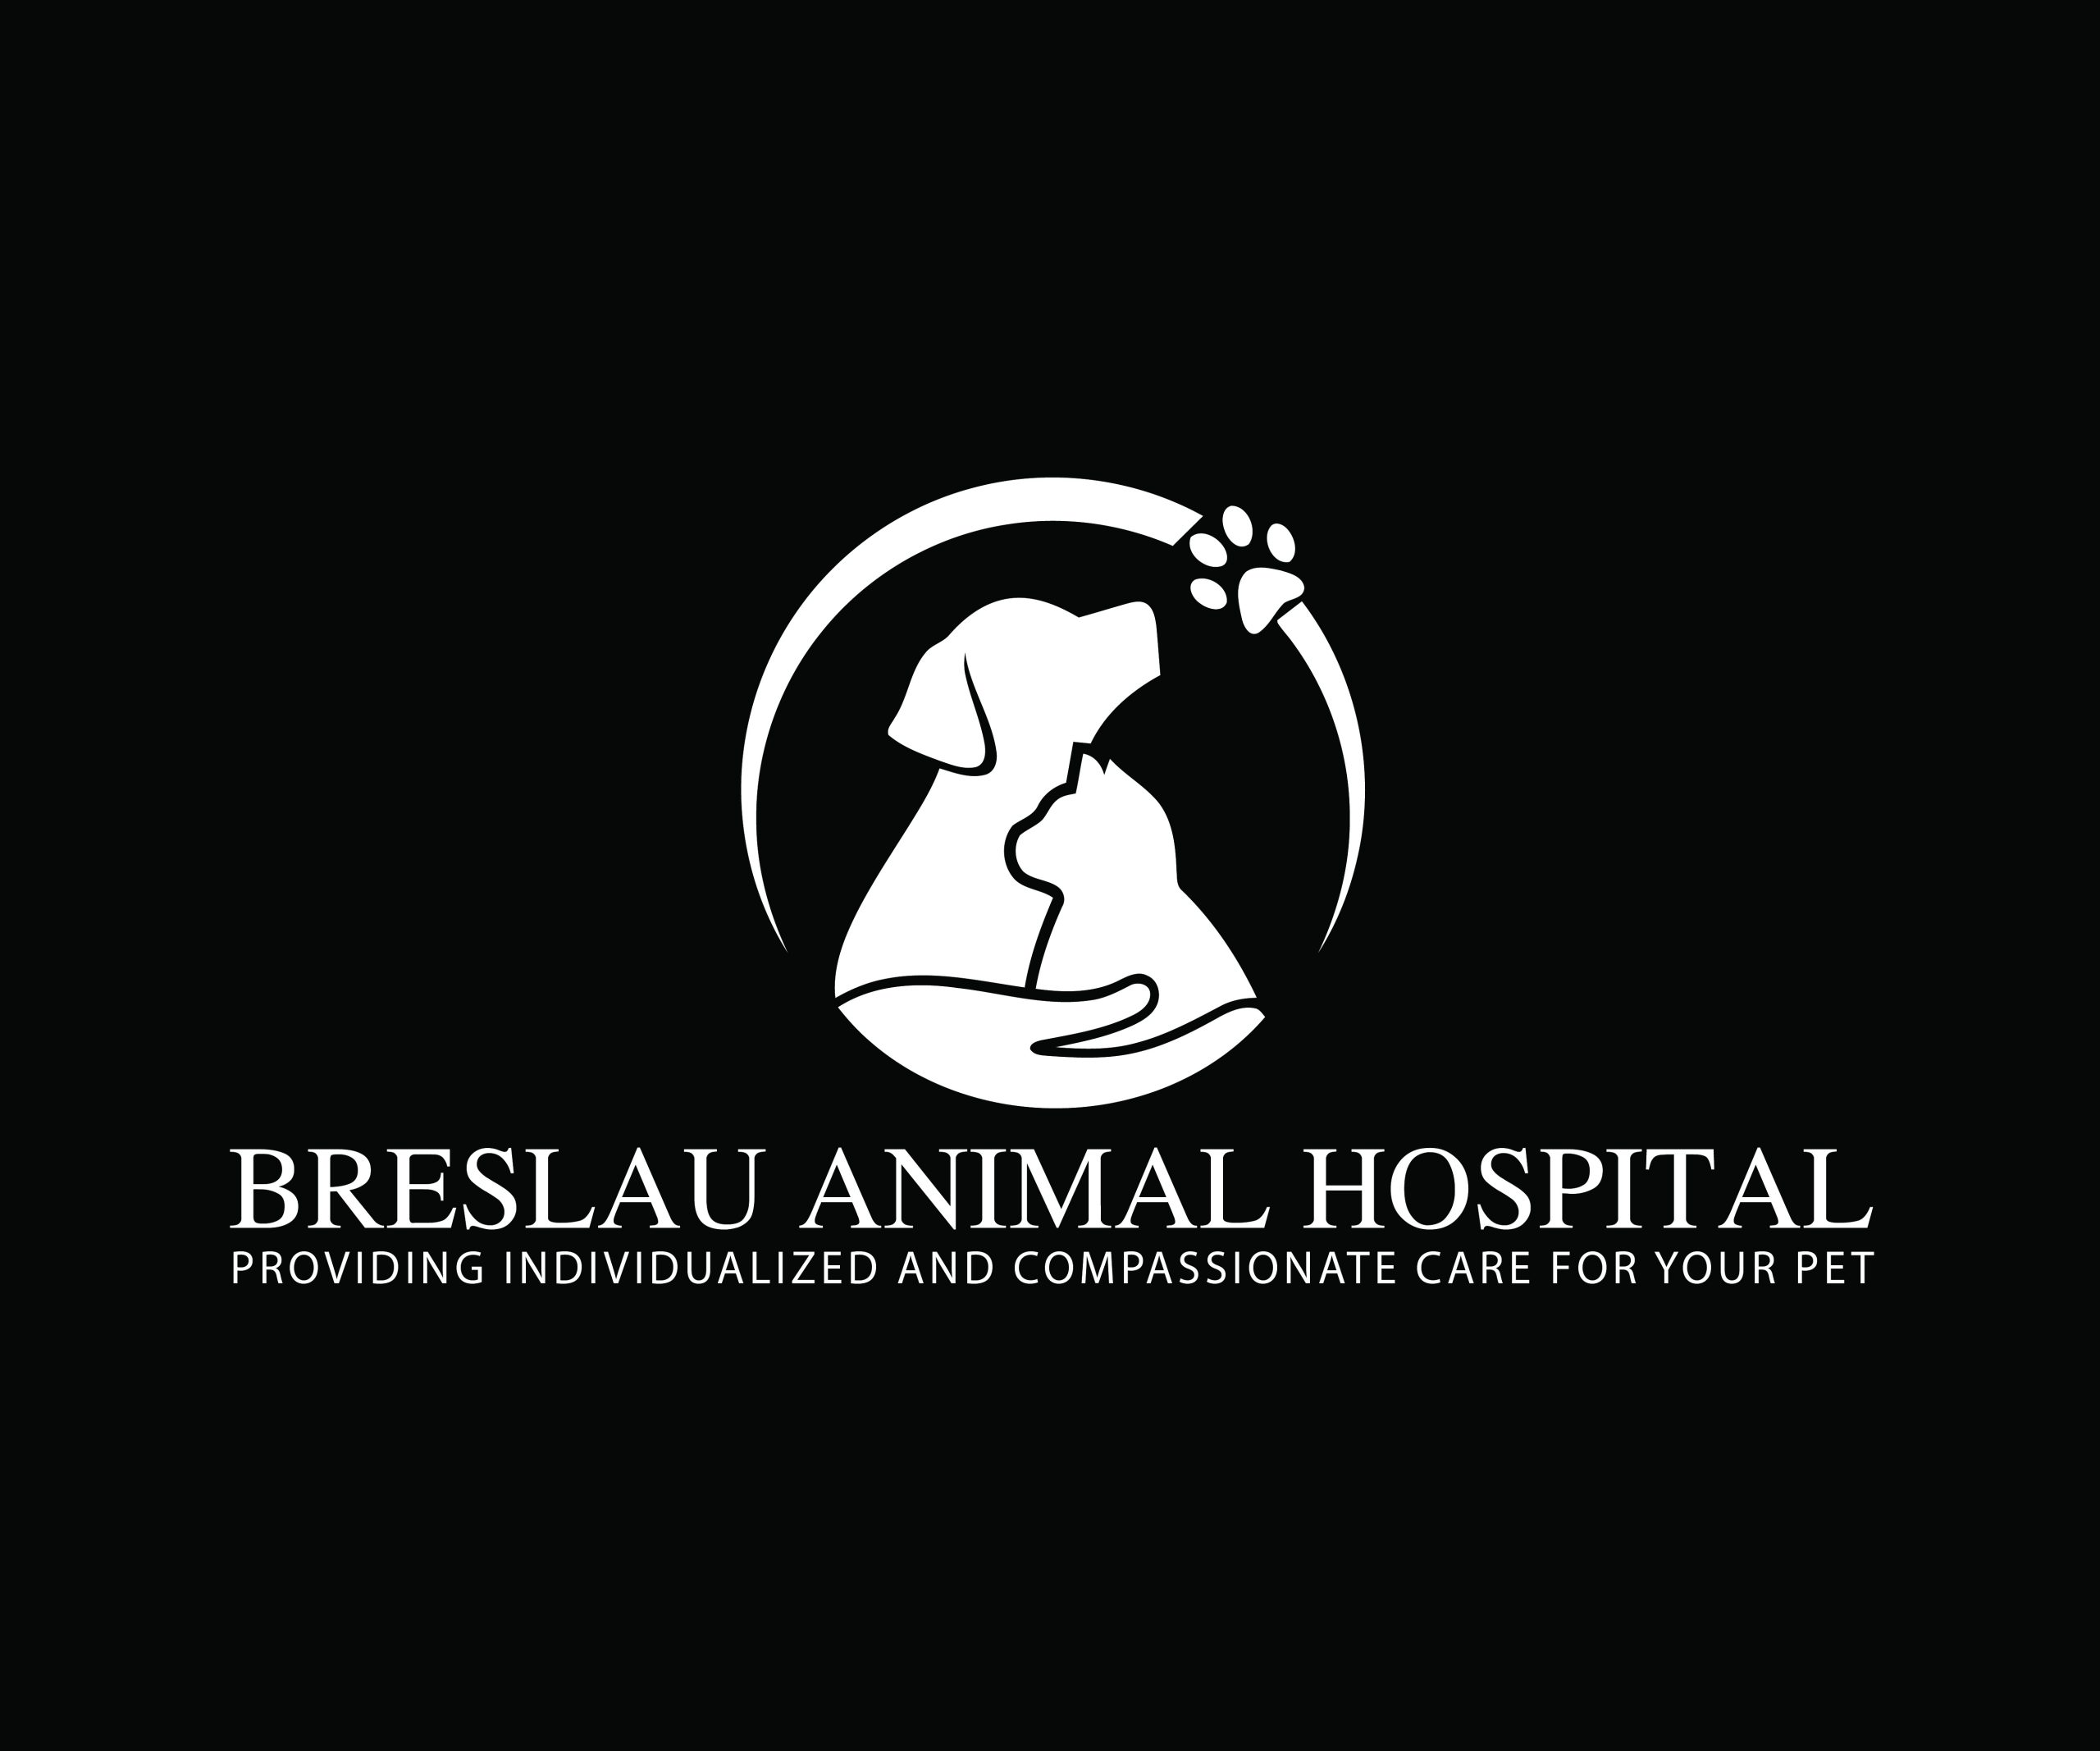 Breslau Animal Hospital